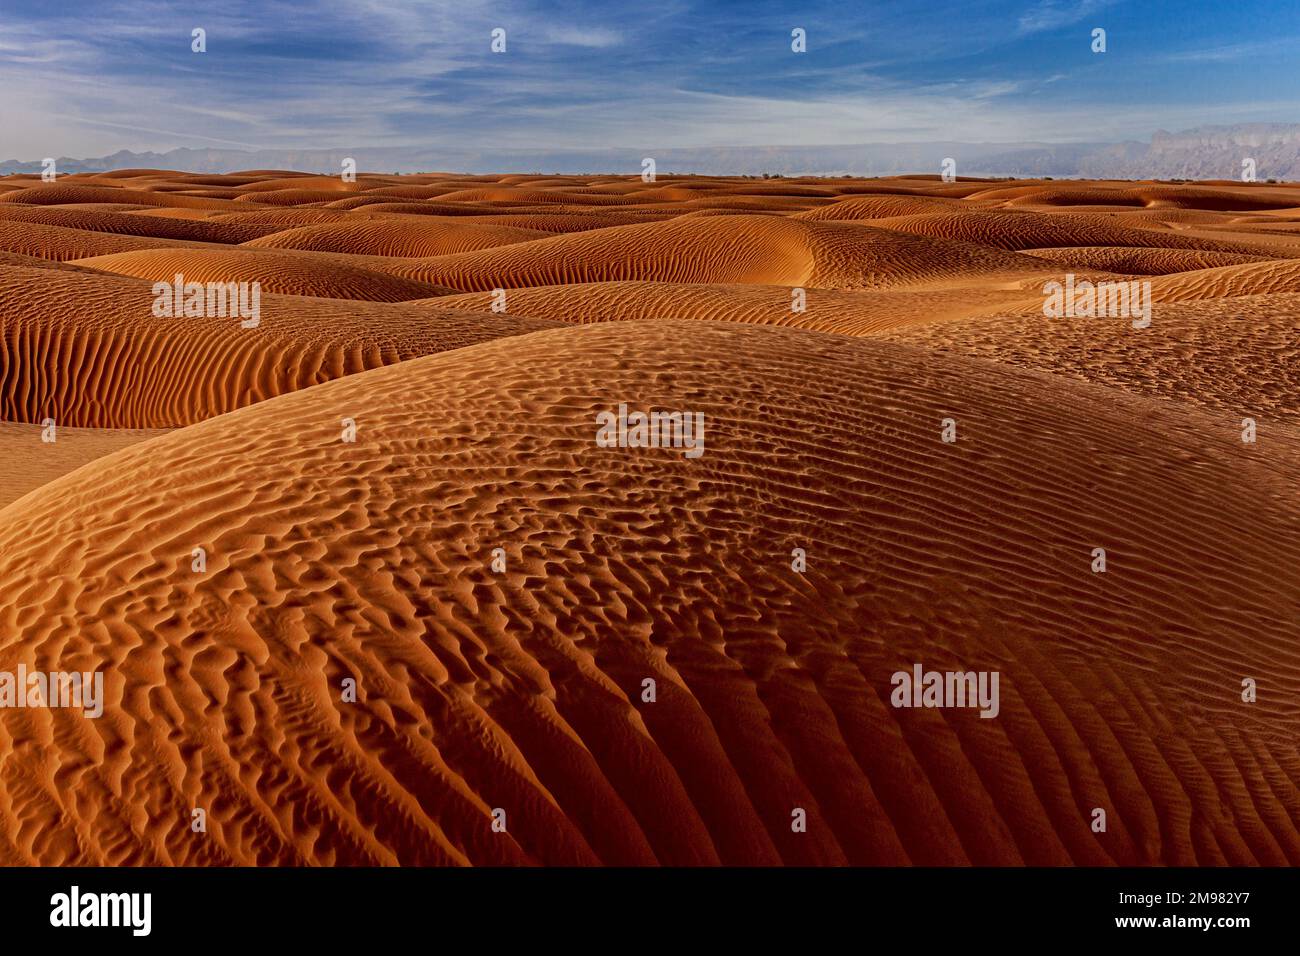 Paysage désertique avec dunes de sable ondulées, Arabie Saoudite Banque D'Images